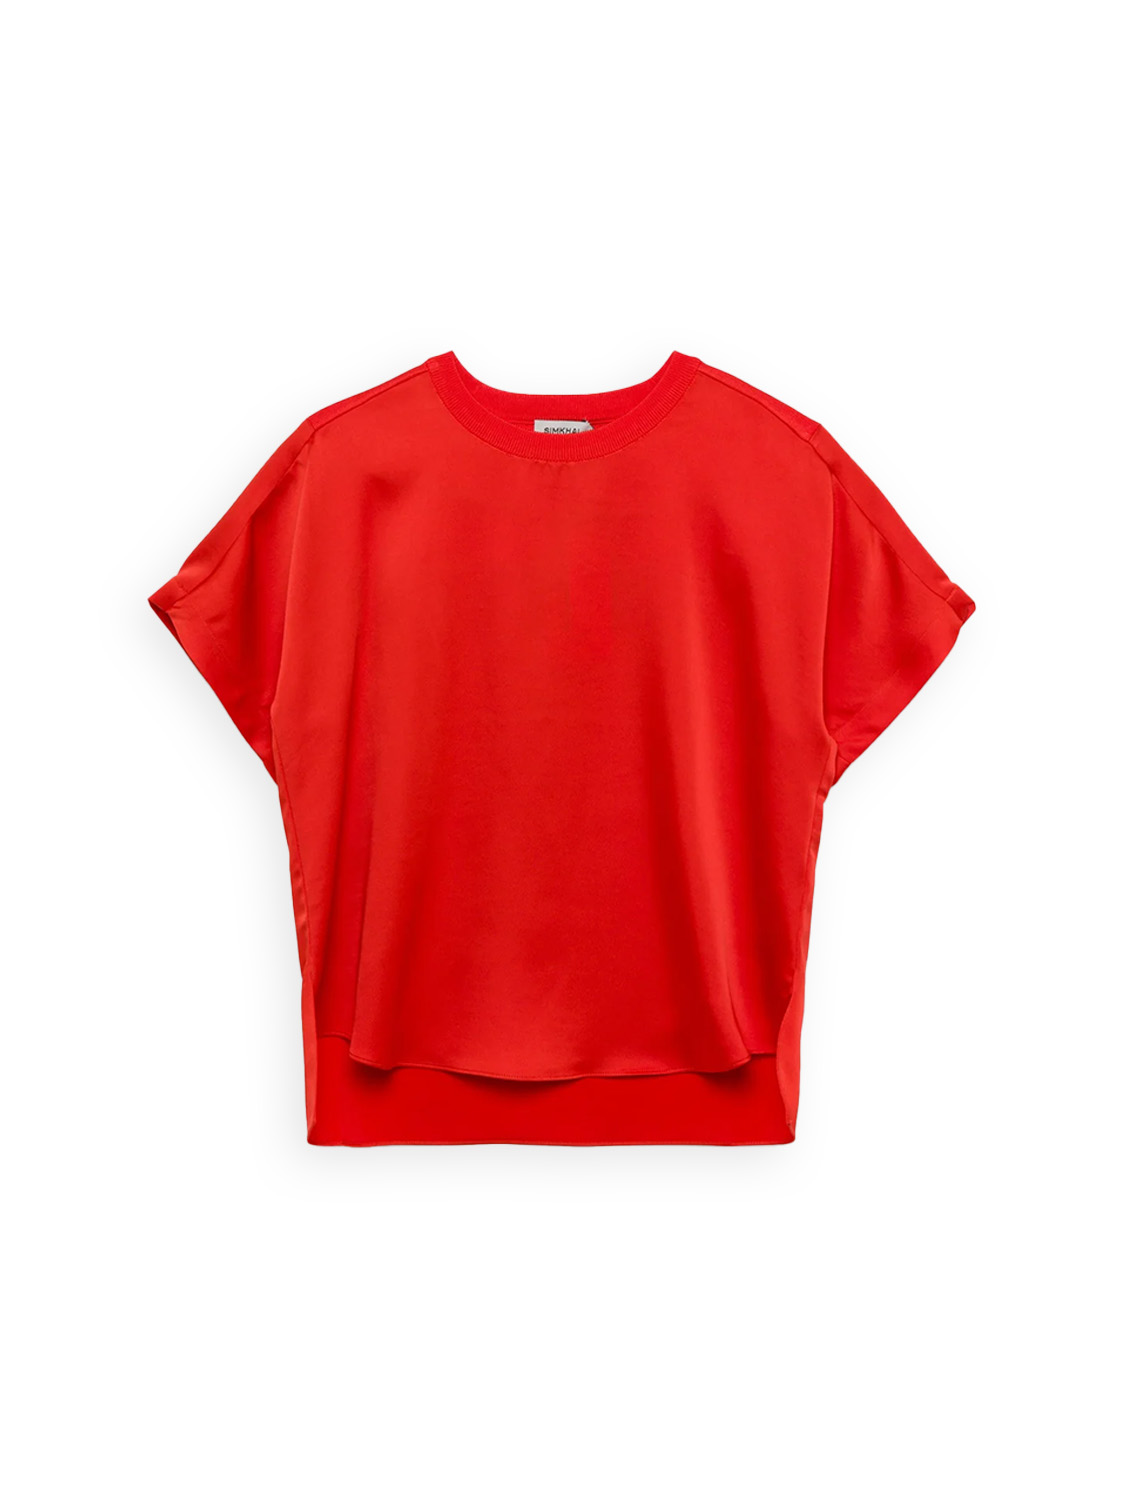 Simkhai Addy – T-Shirt mit gestricktem Rücken   rot M